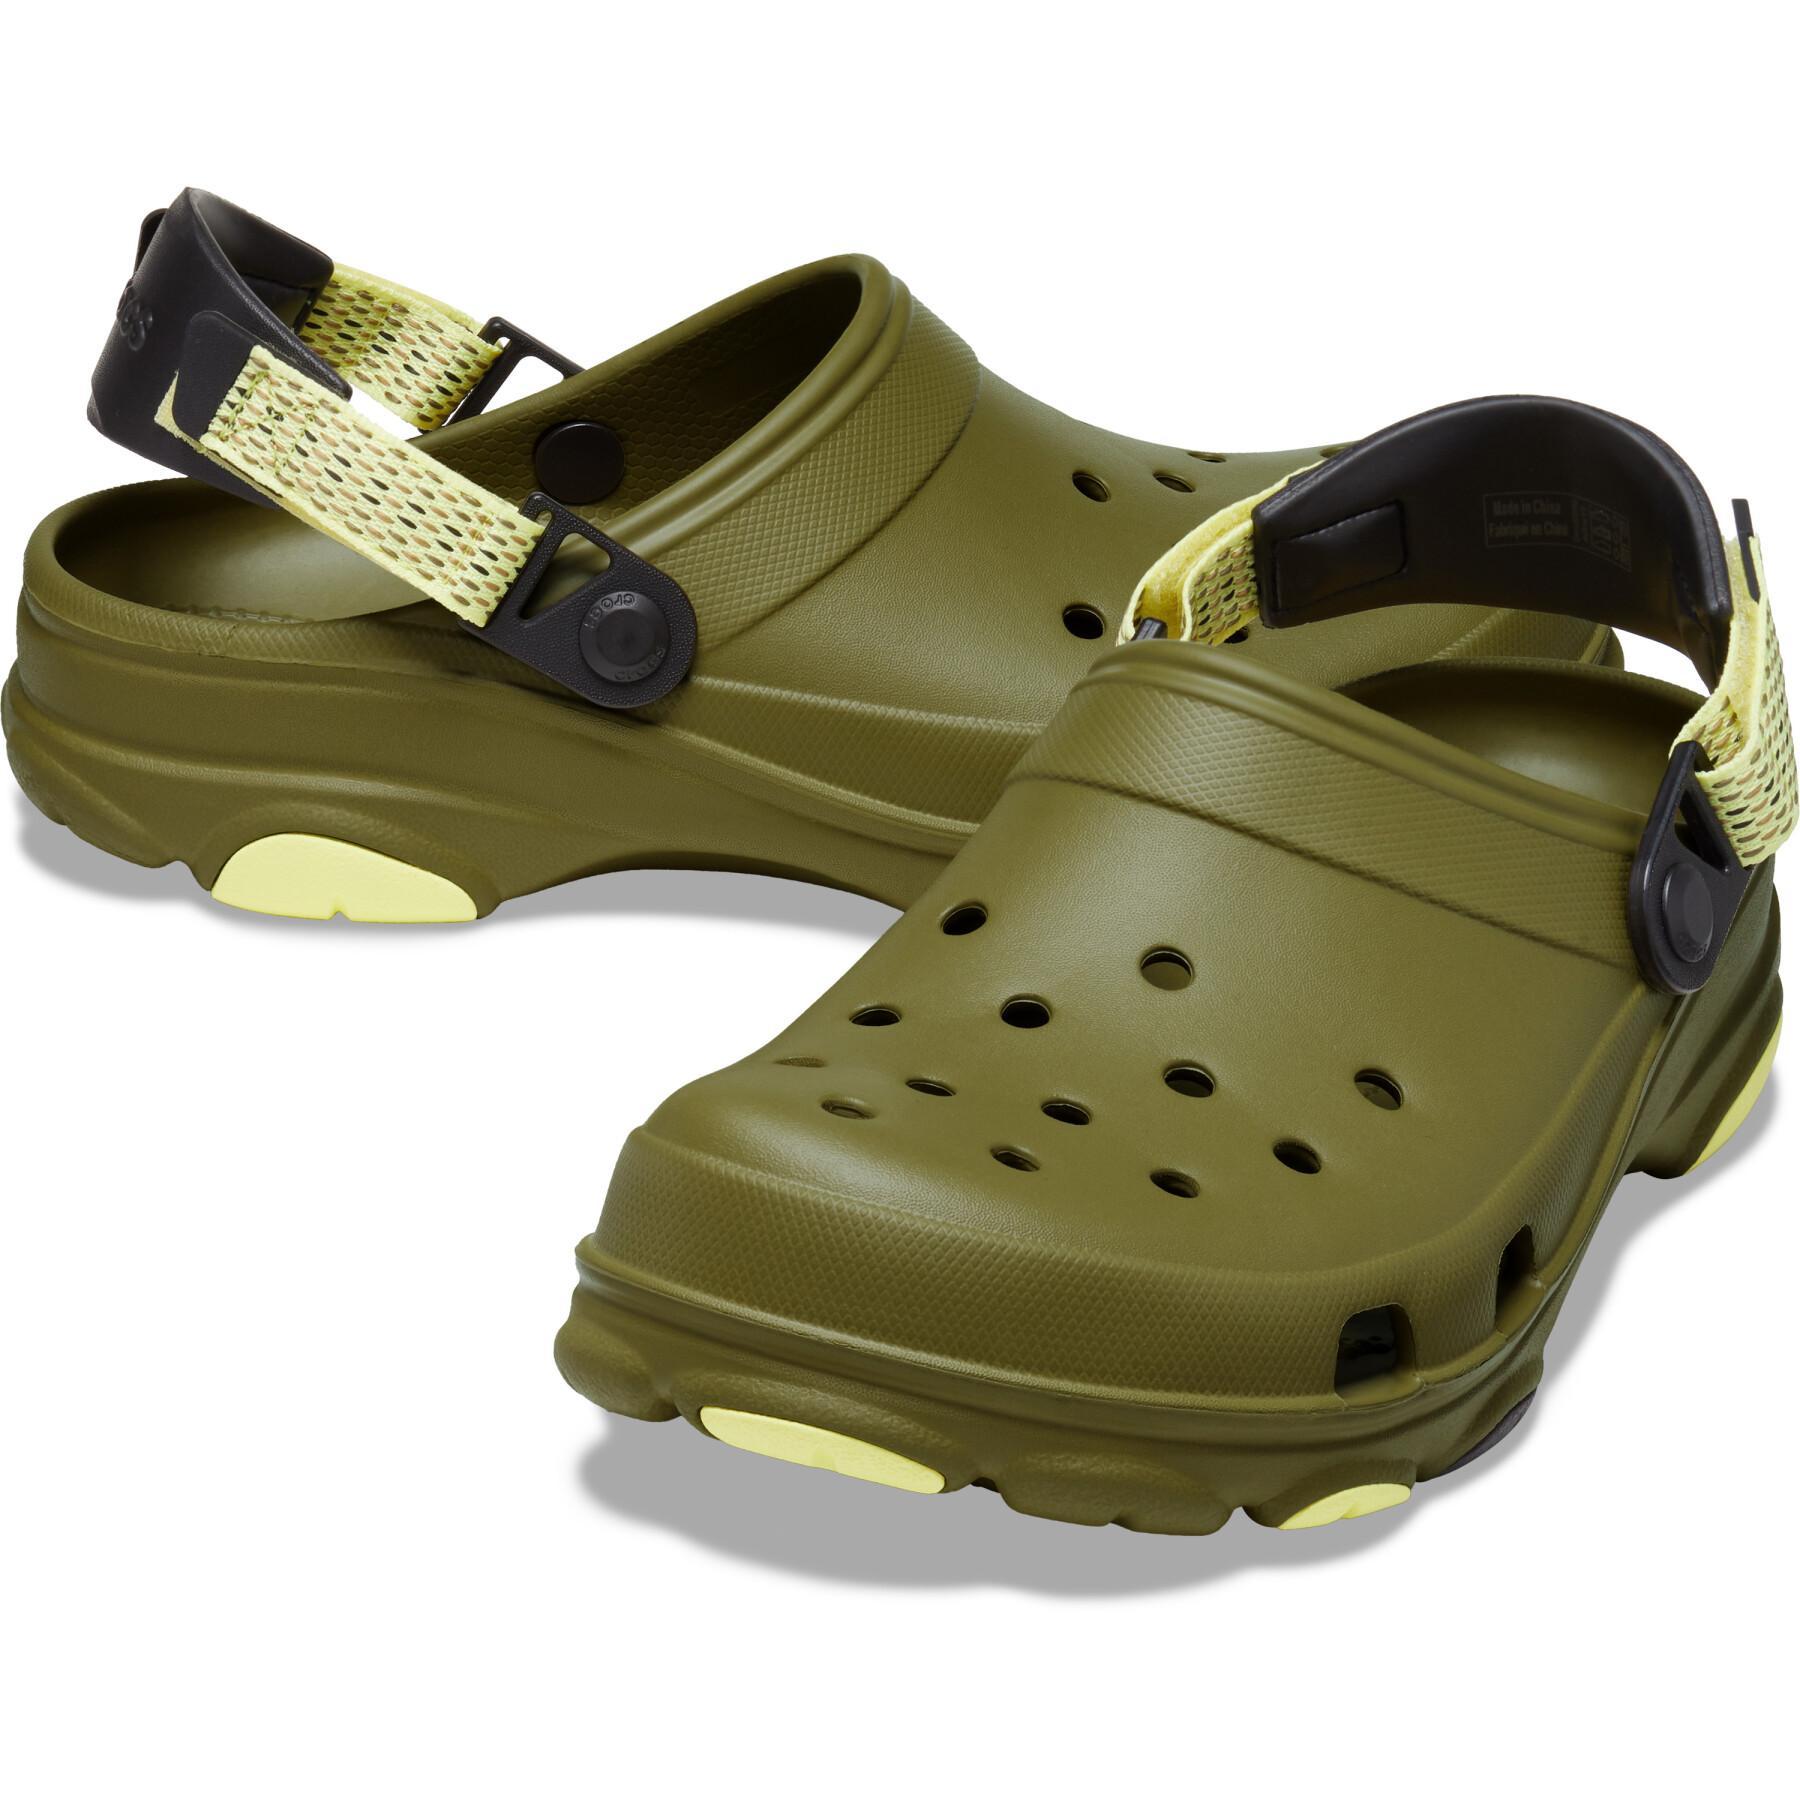 Classici zoccoli all-terrain Crocs